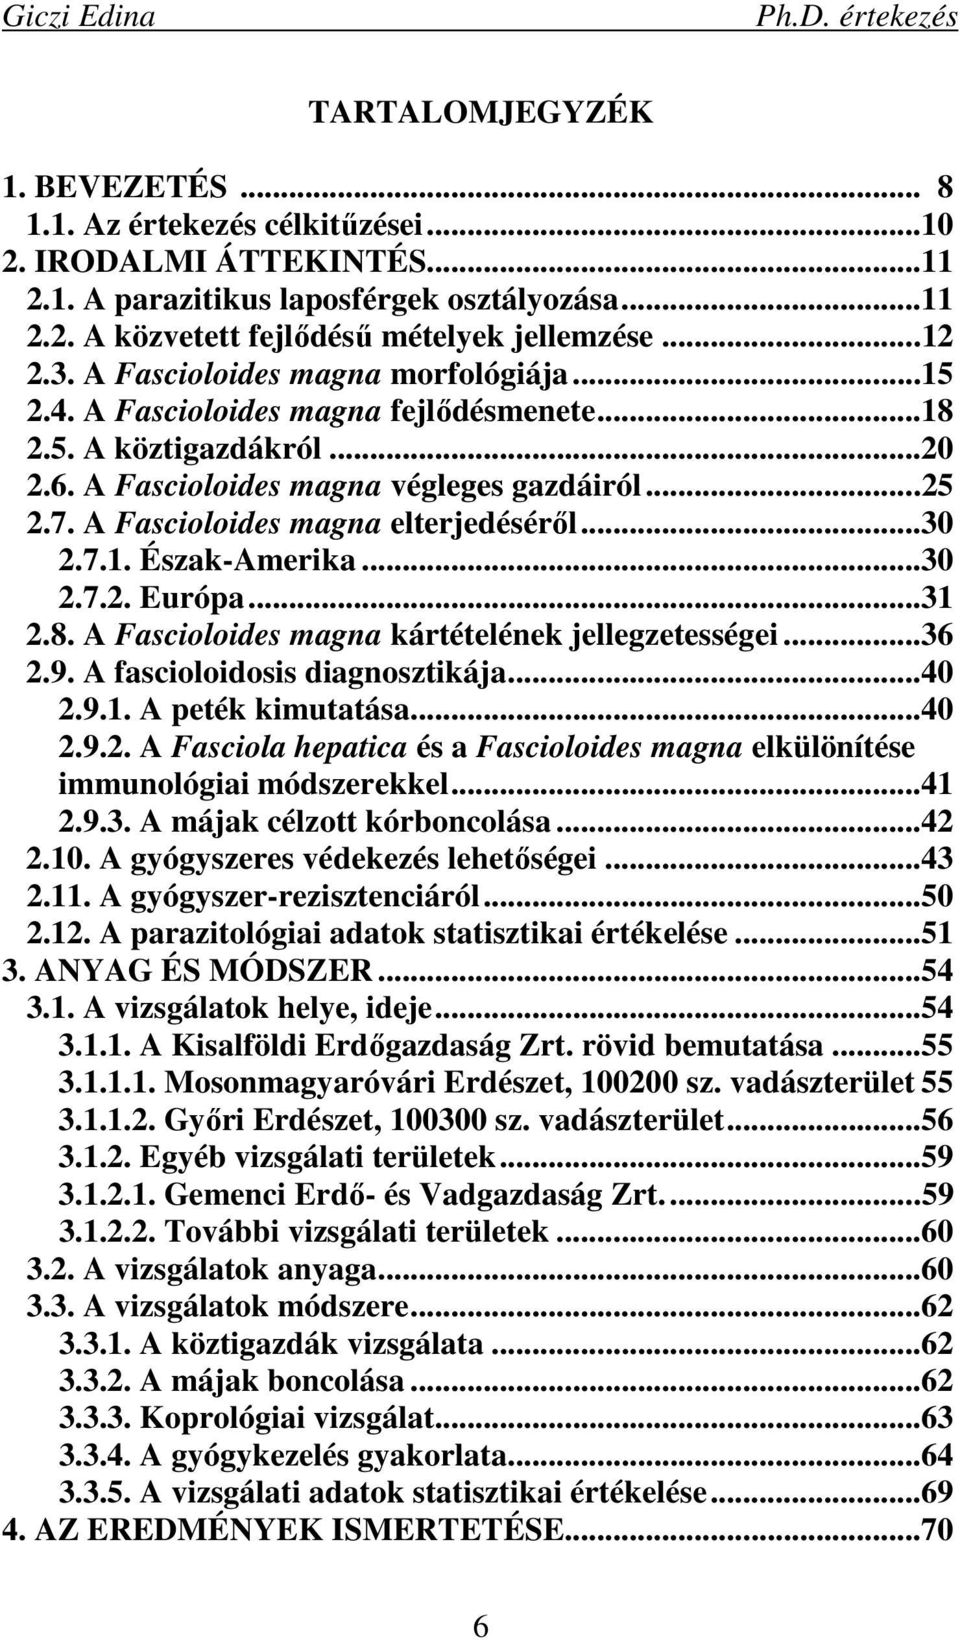 A Fascioloides magna elterjedésérıl...30 2.7.1. Észak-Amerika...30 2.7.2. Európa...31 2.8. A Fascioloides magna kártételének jellegzetességei...36 2.9. A fascioloidosis diagnosztikája...40 2.9.1. A peték kimutatása.